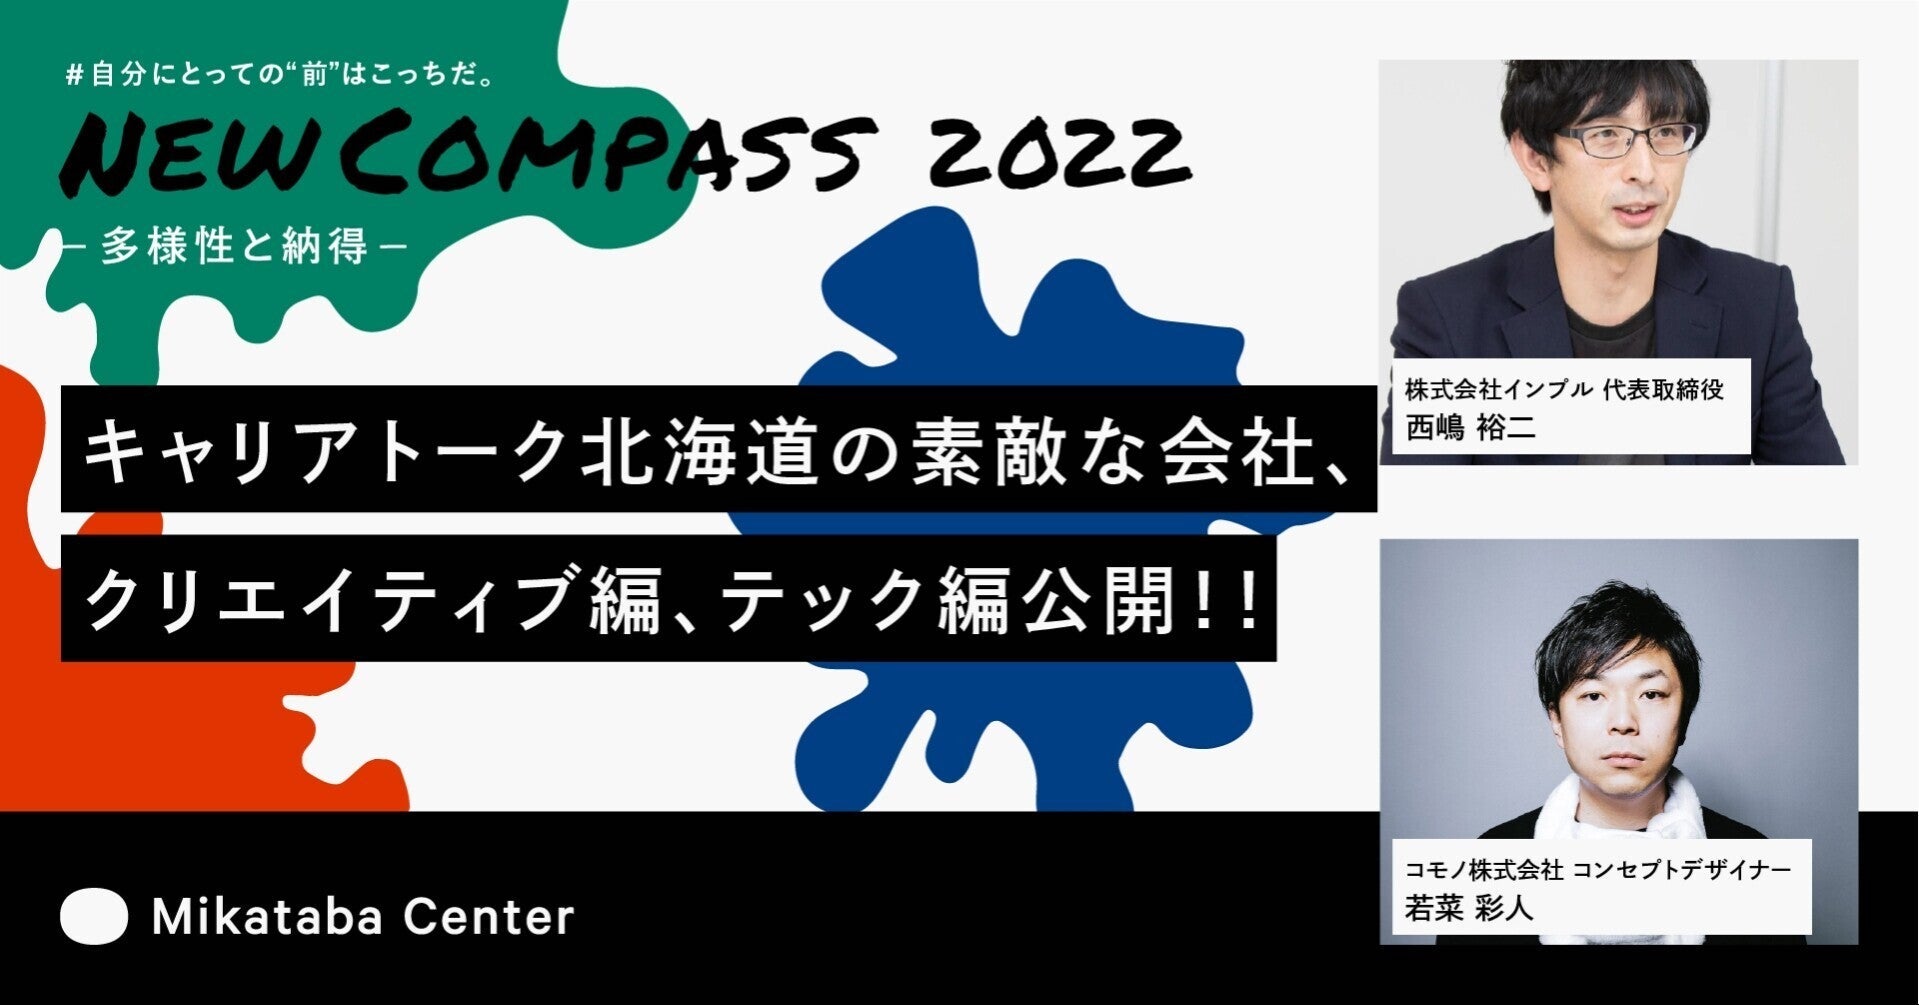 イベント「New Compass 2022」に登壇します